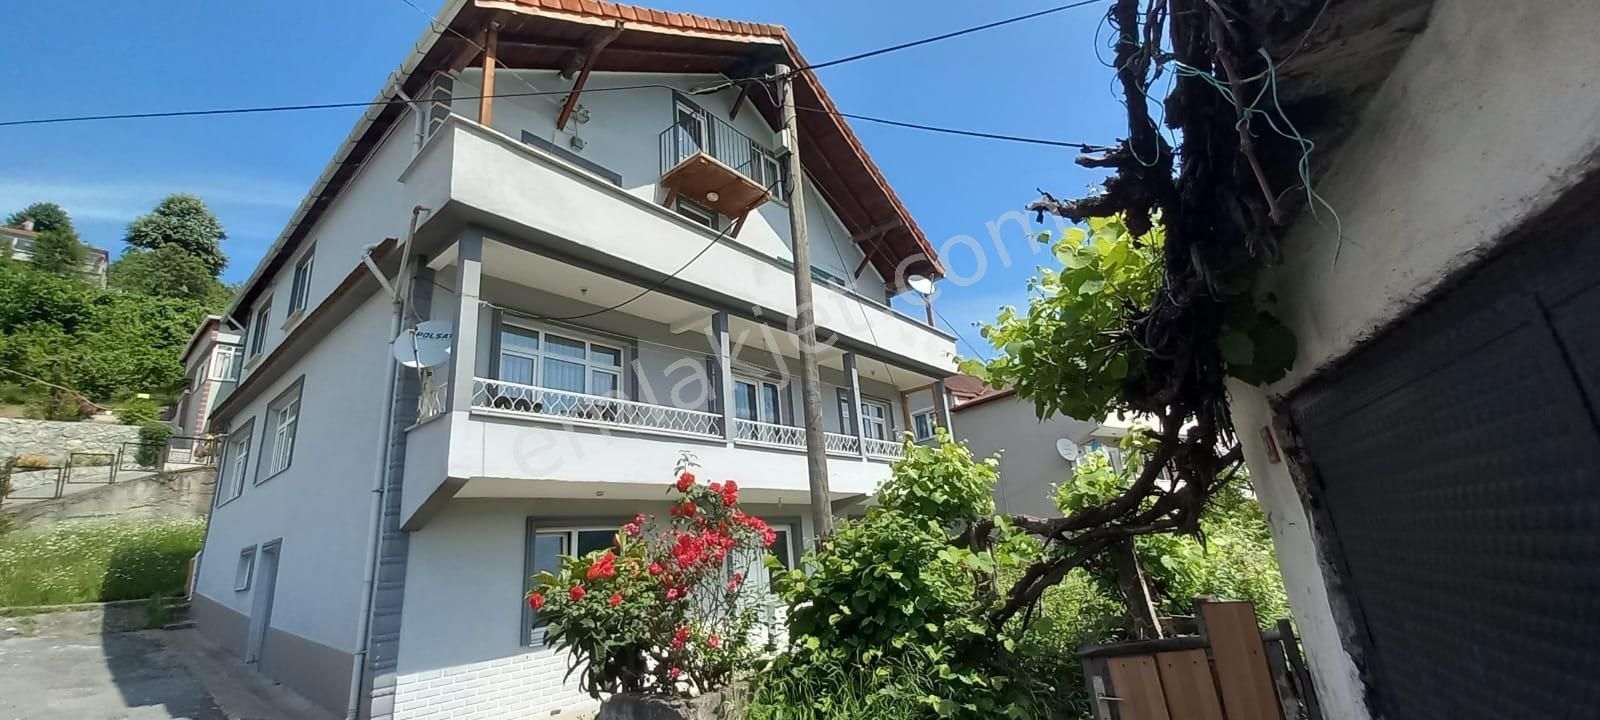 Kozlu İhsaniye Satılık Müstakil Ev  Zonguldak Kozlu İlçesi İhsaniye Mahallesi Satılık Müstakil Ev